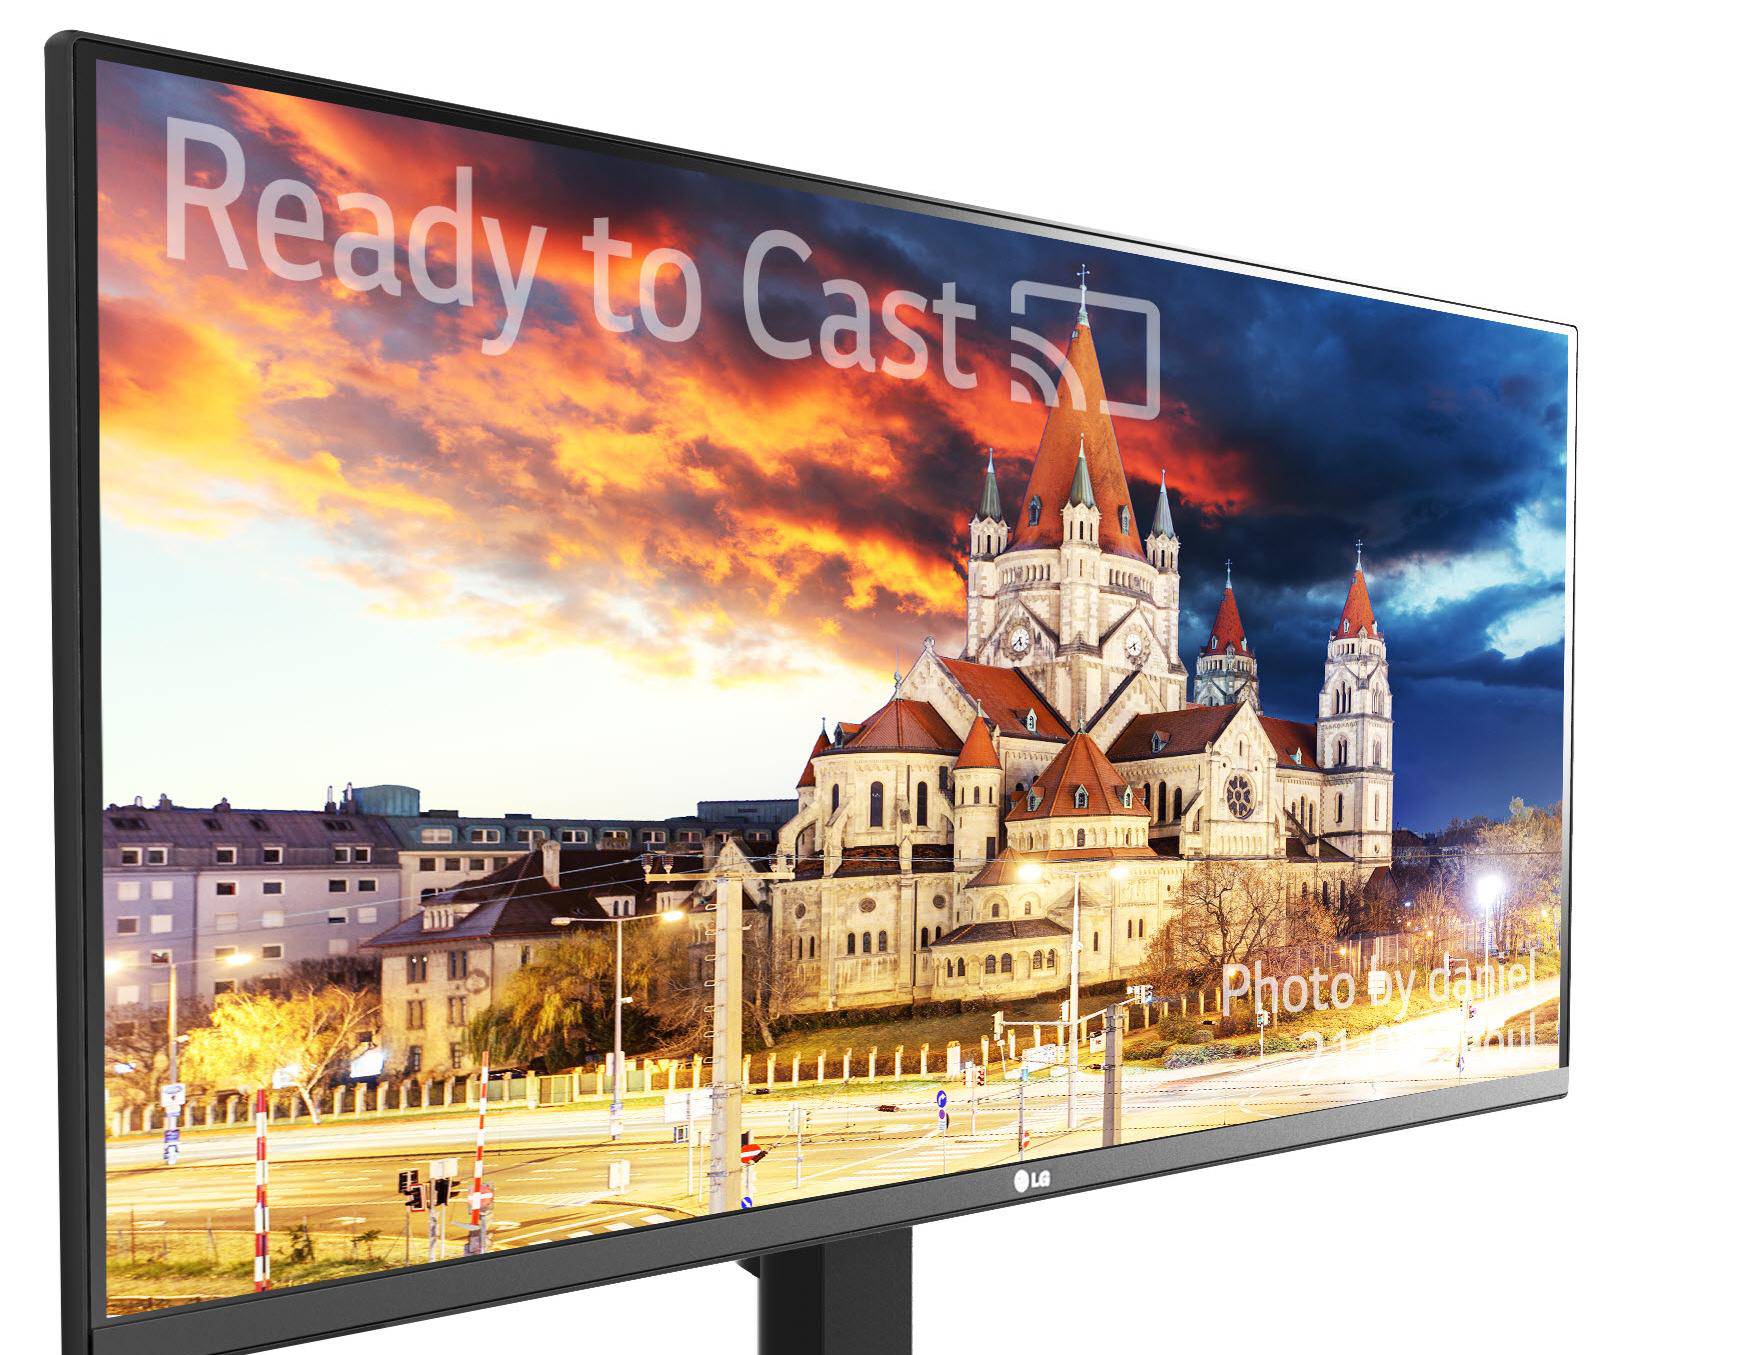 Blještavilo boja: LG na CES-u predstavlja 4K HDR monitore